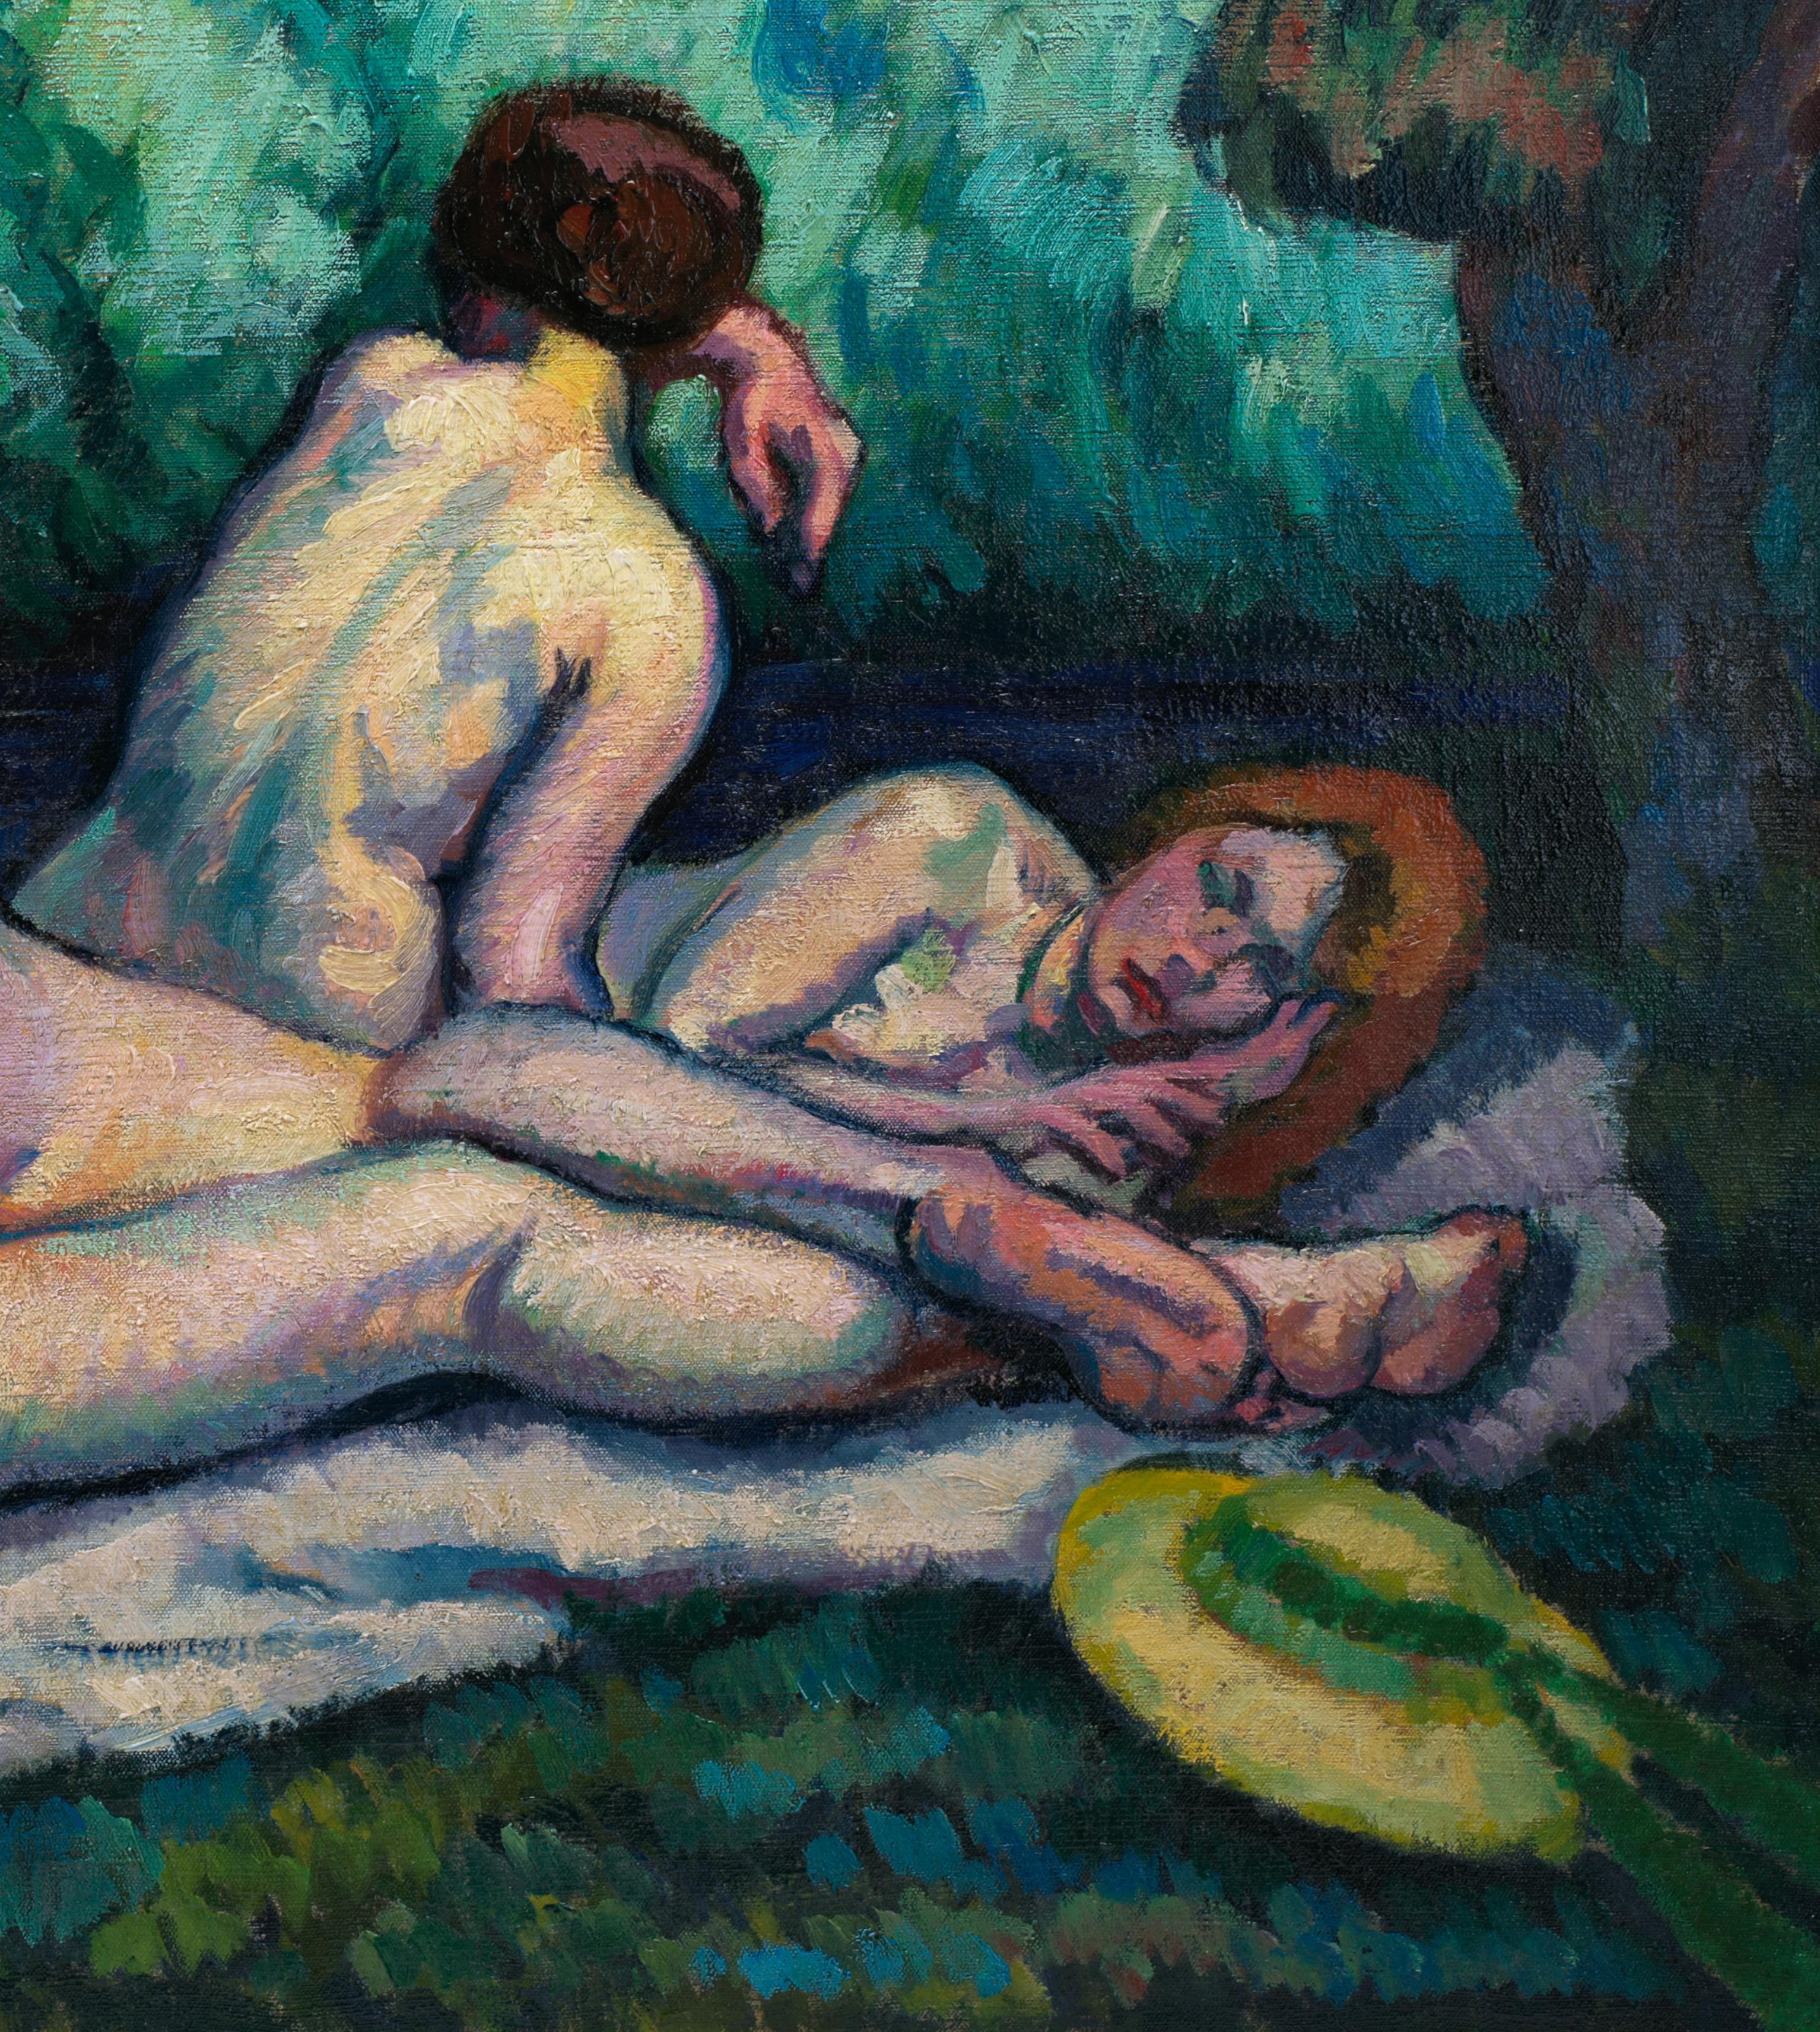 Huile sur toile de Roger GRILLON (1881-1938), France, 1914. Les 